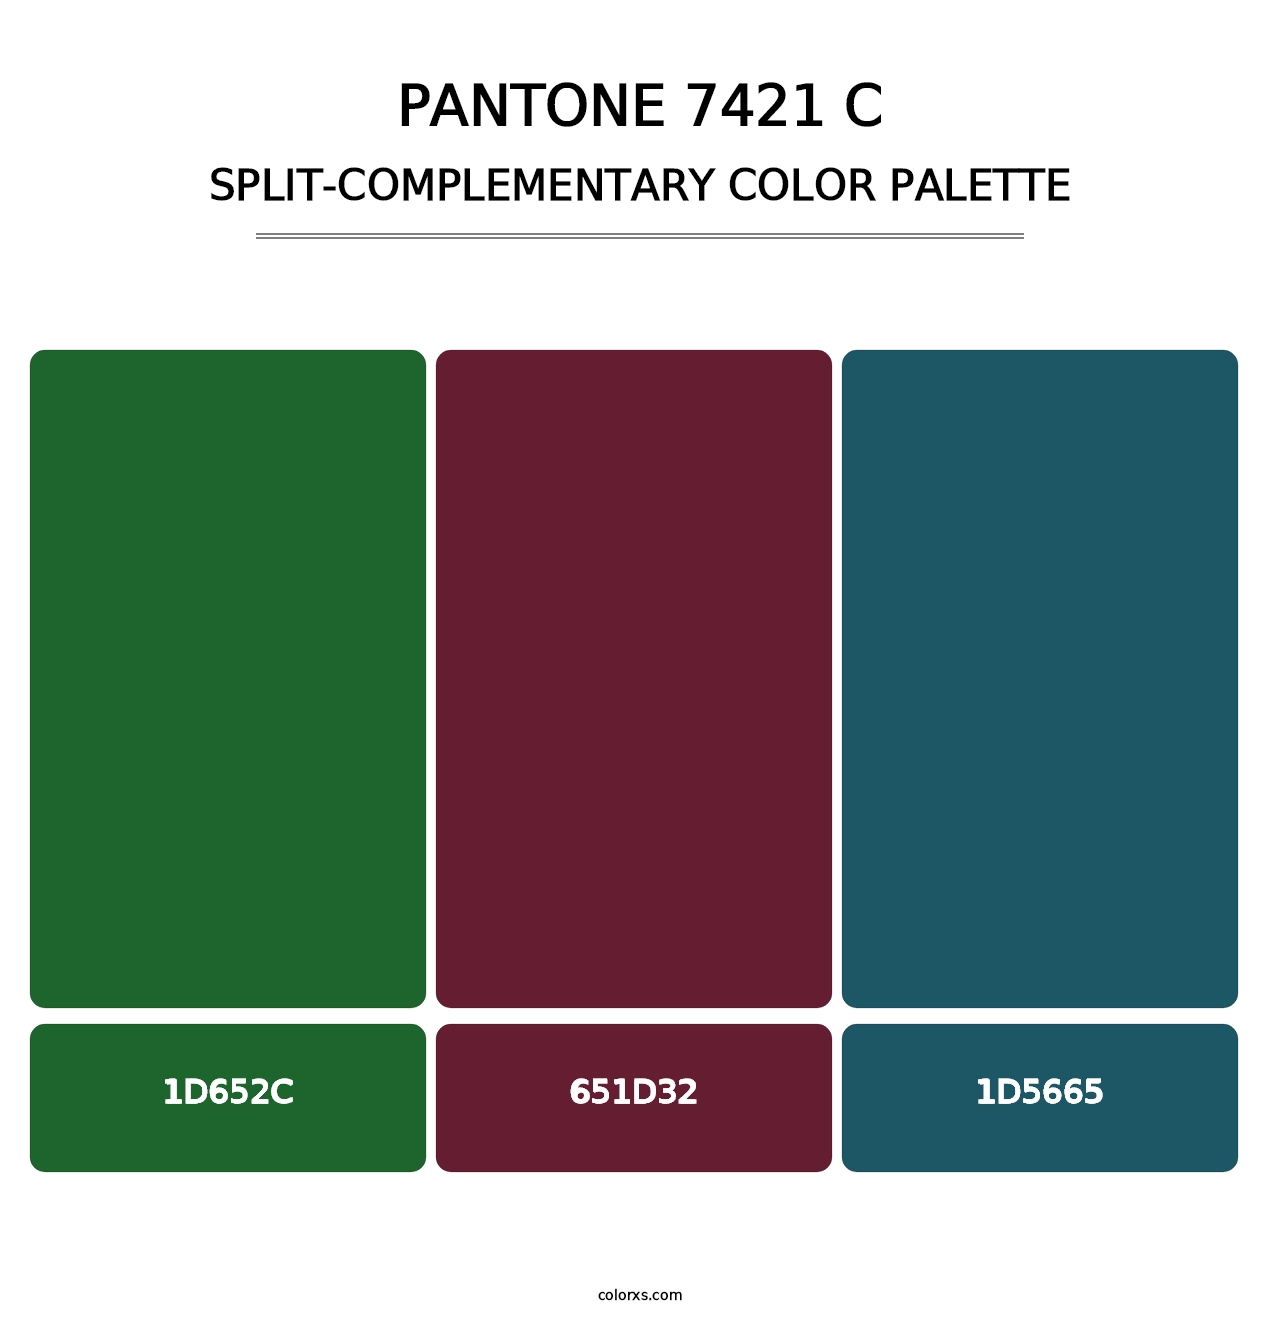 PANTONE 7421 C - Split-Complementary Color Palette